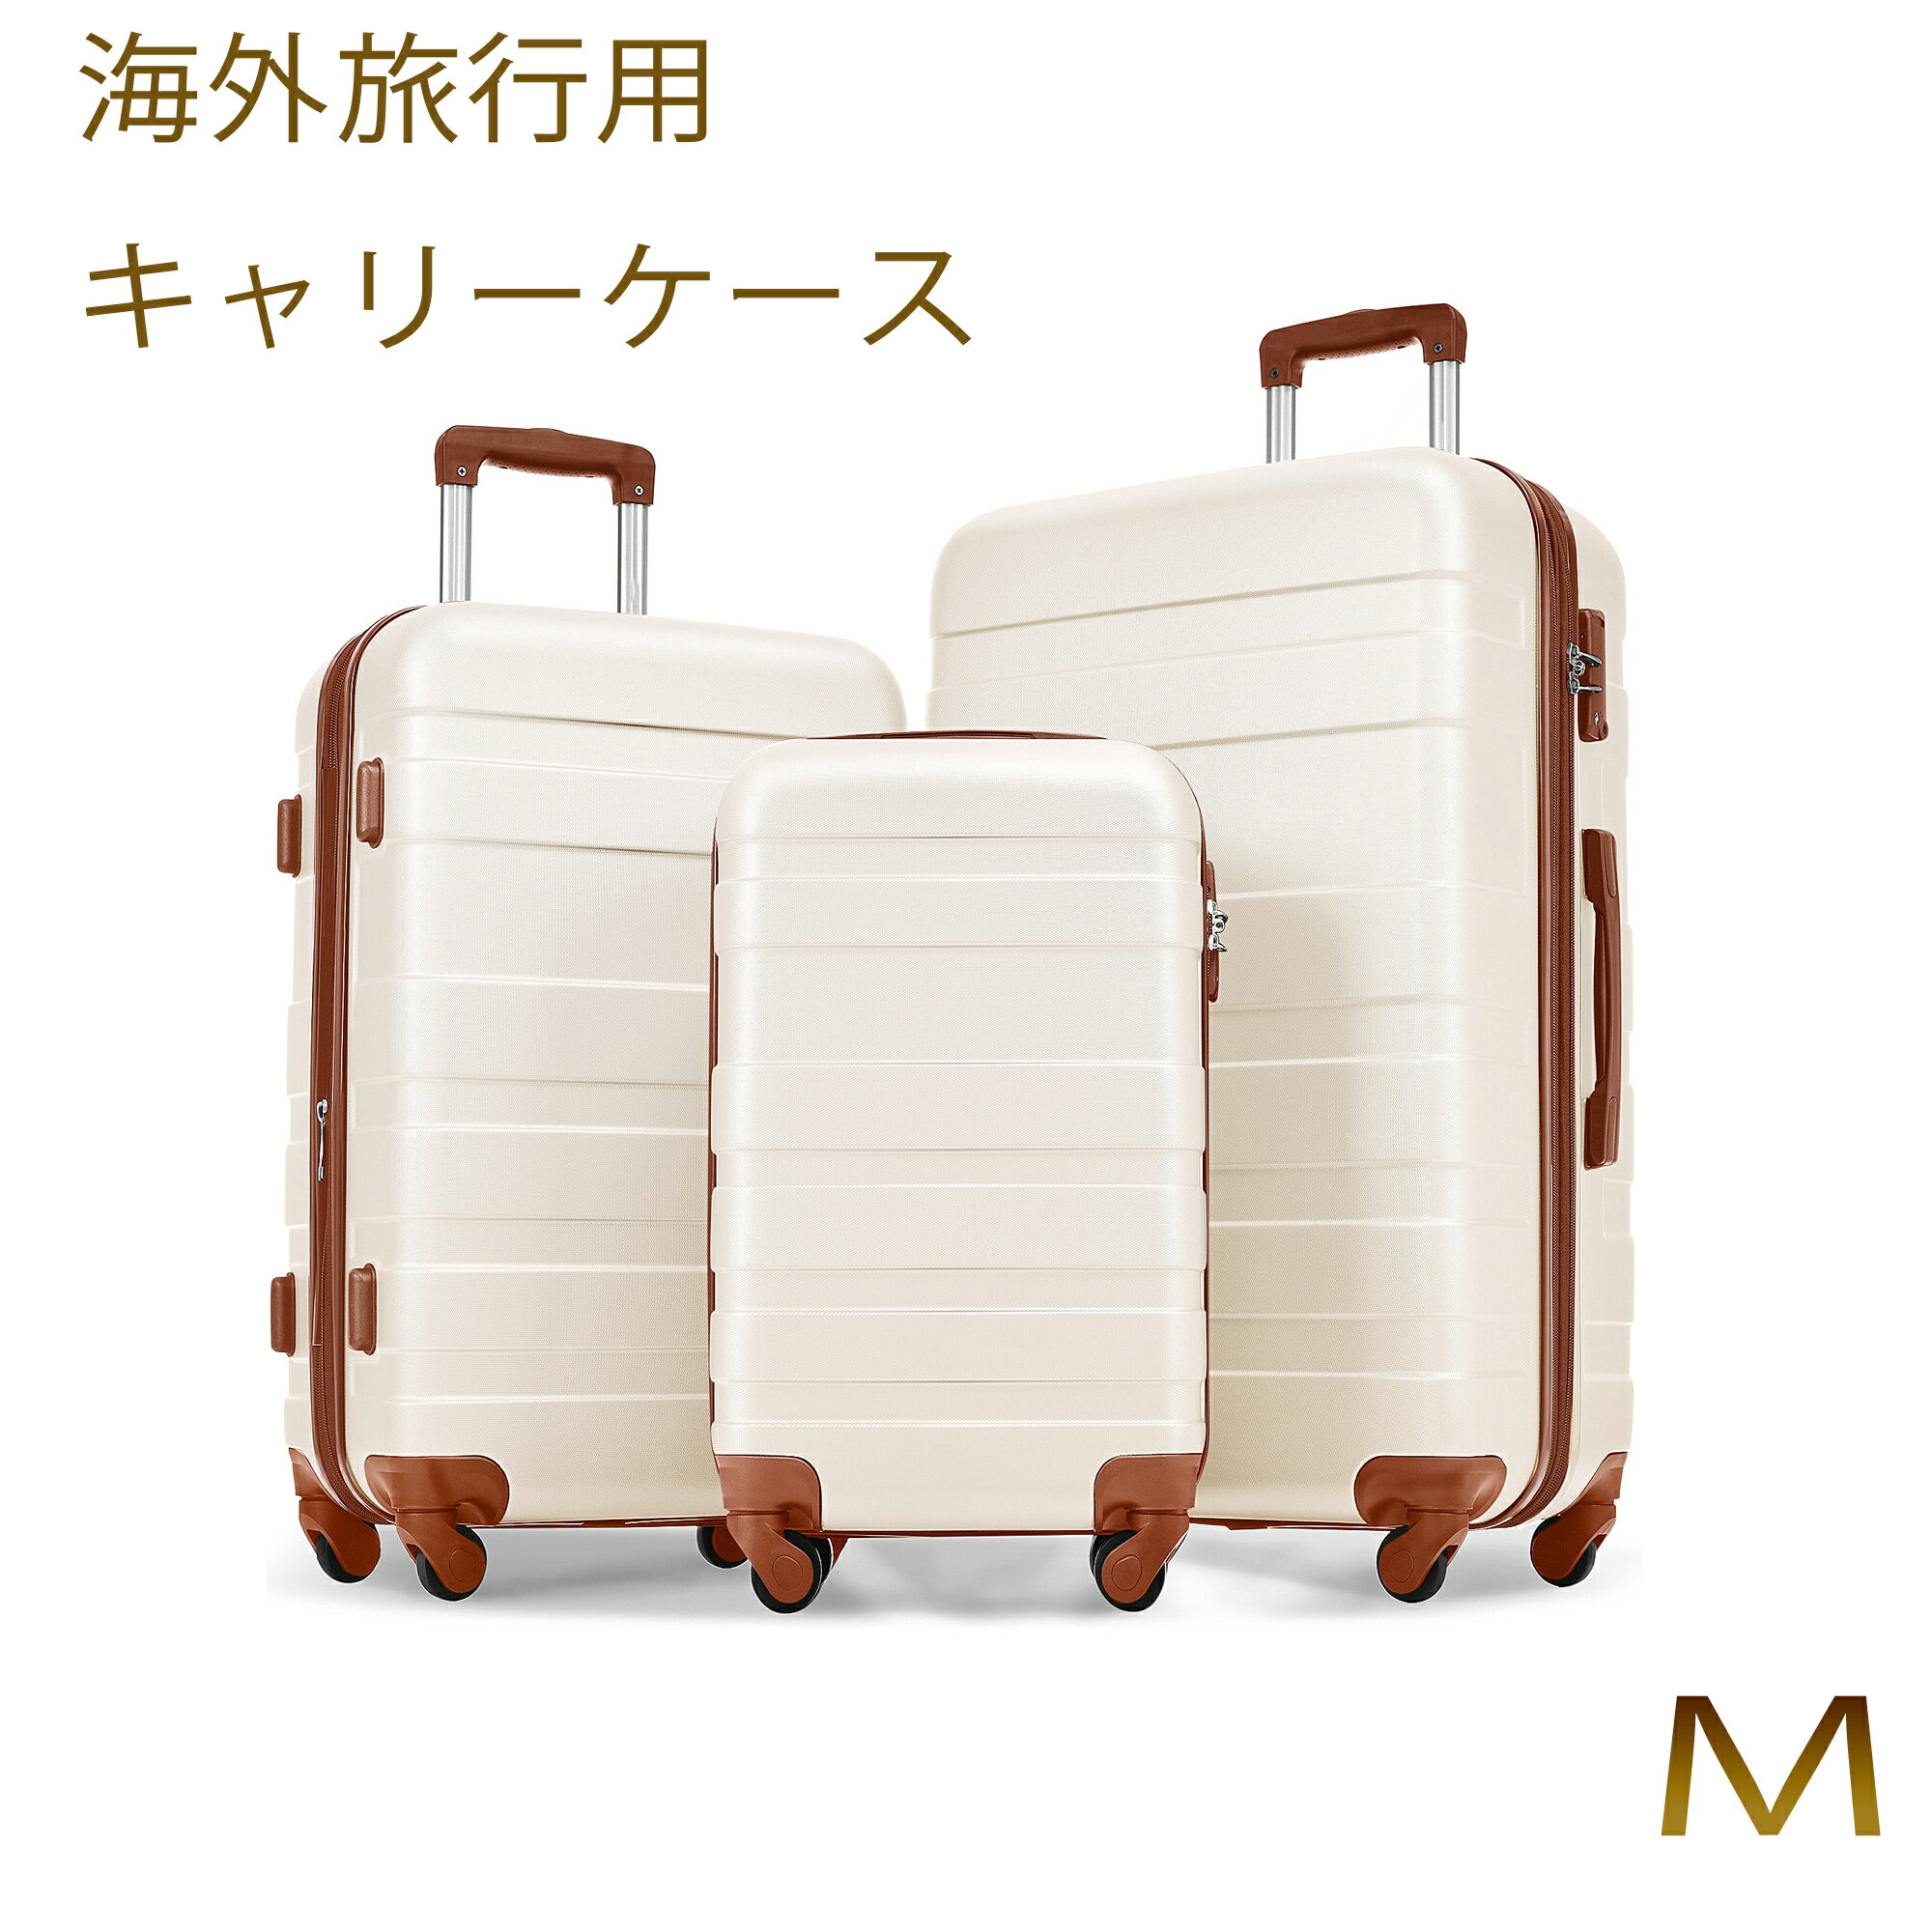 【Mサイズ】スーツケース キャリーケース TSAロック キャリーバッグ中型 かわいい 超軽量 ファスナー 海外 国内 旅行